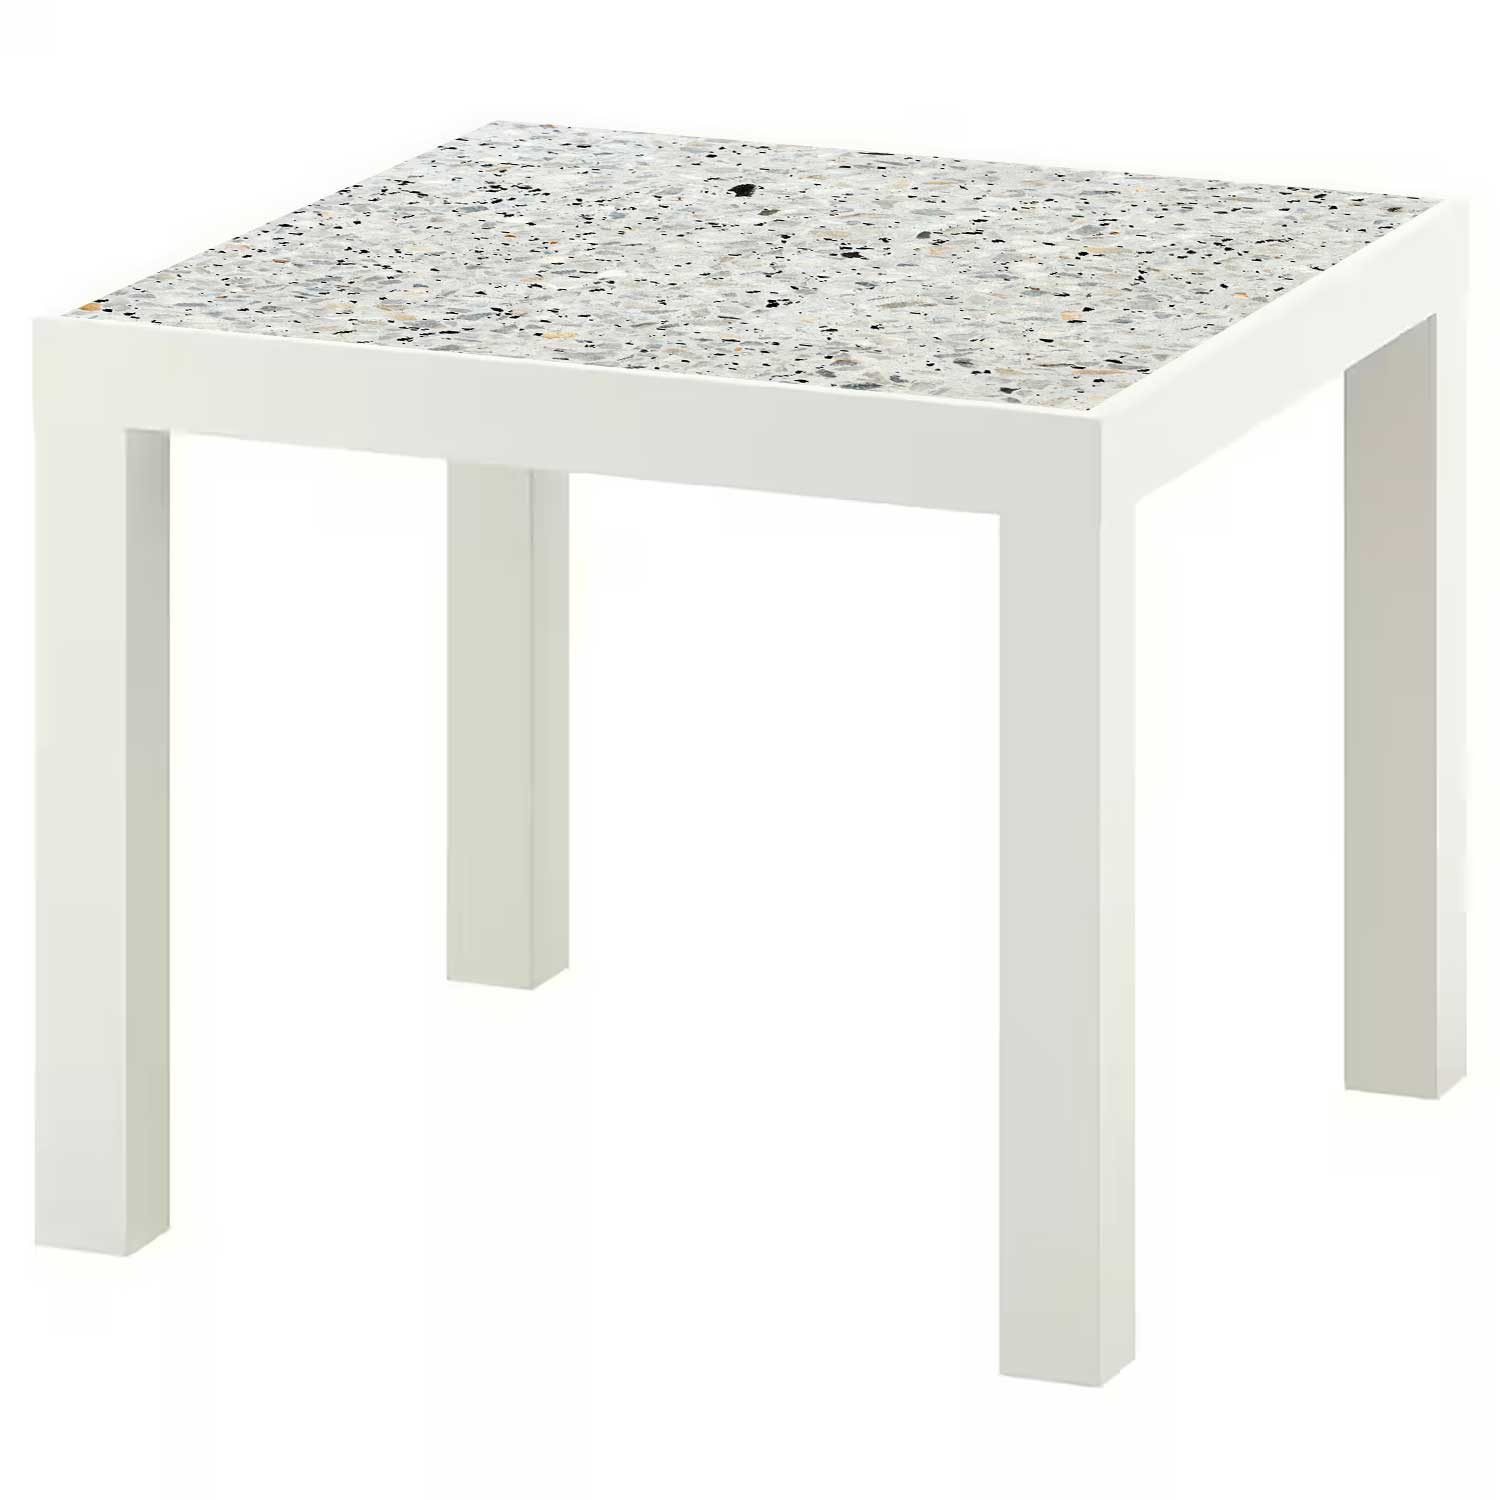 Möbelfolie für IKEA Lack Tisch 55x55 cm 'Terrazzo'